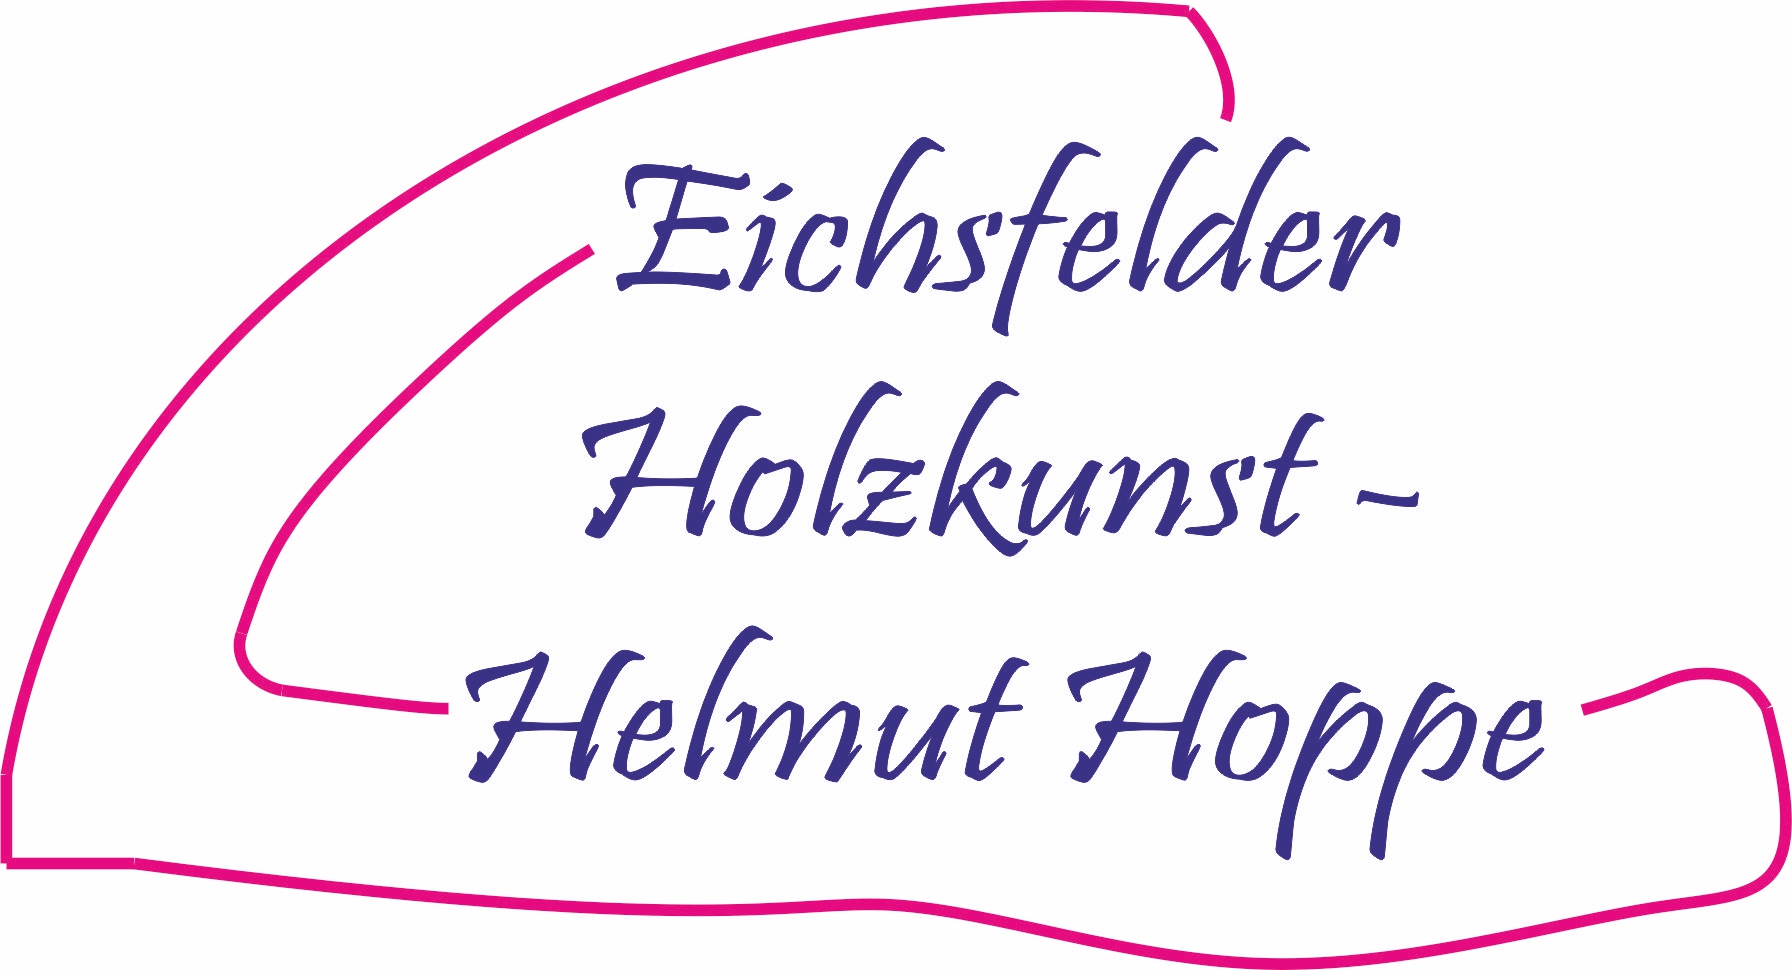 Eichsfelder Holzkunst Logo